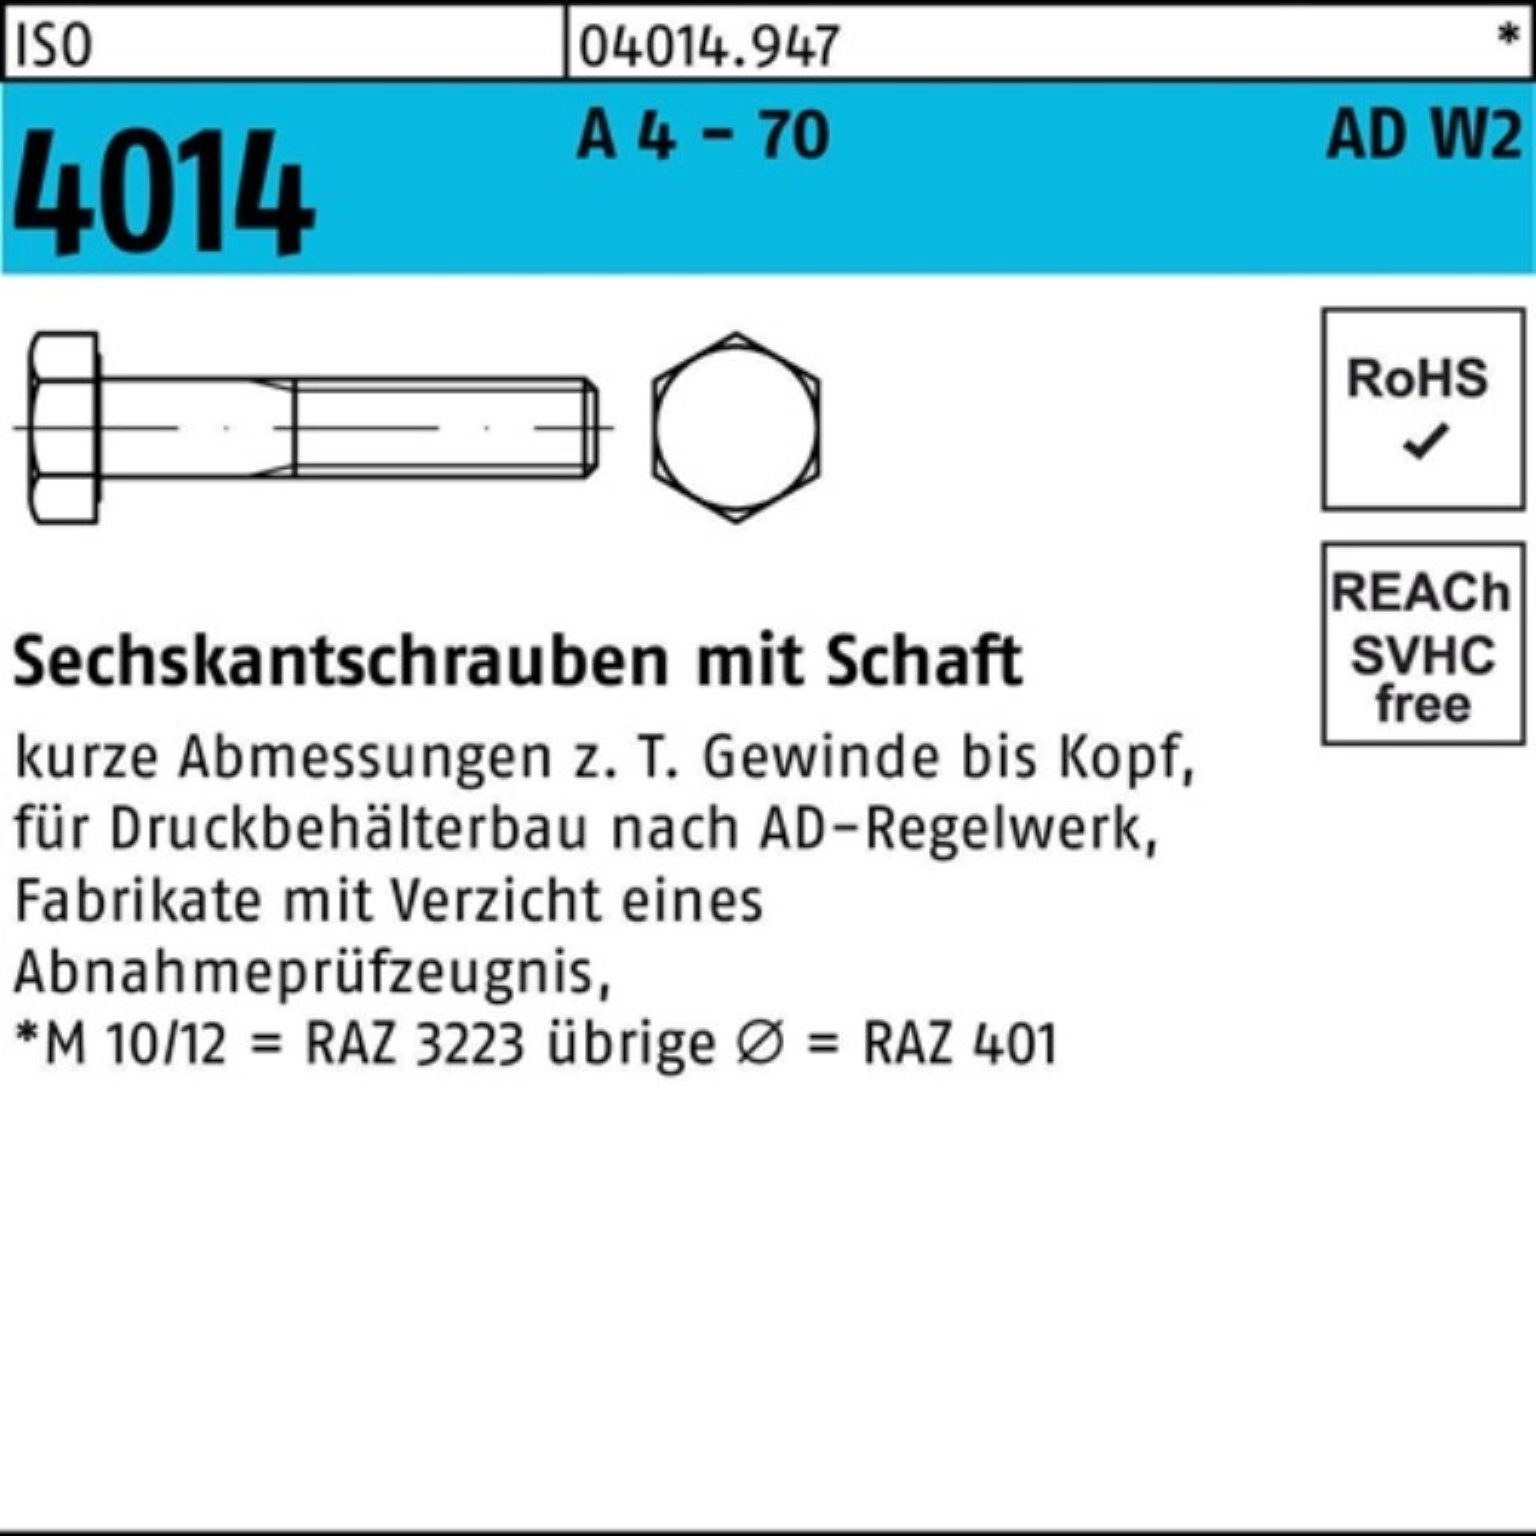 Bufab Sechskantschraube 100er Pack Sechskantschraube ISO 4014 Schaft M16x 100 A 4 - 70 AD-W2 2